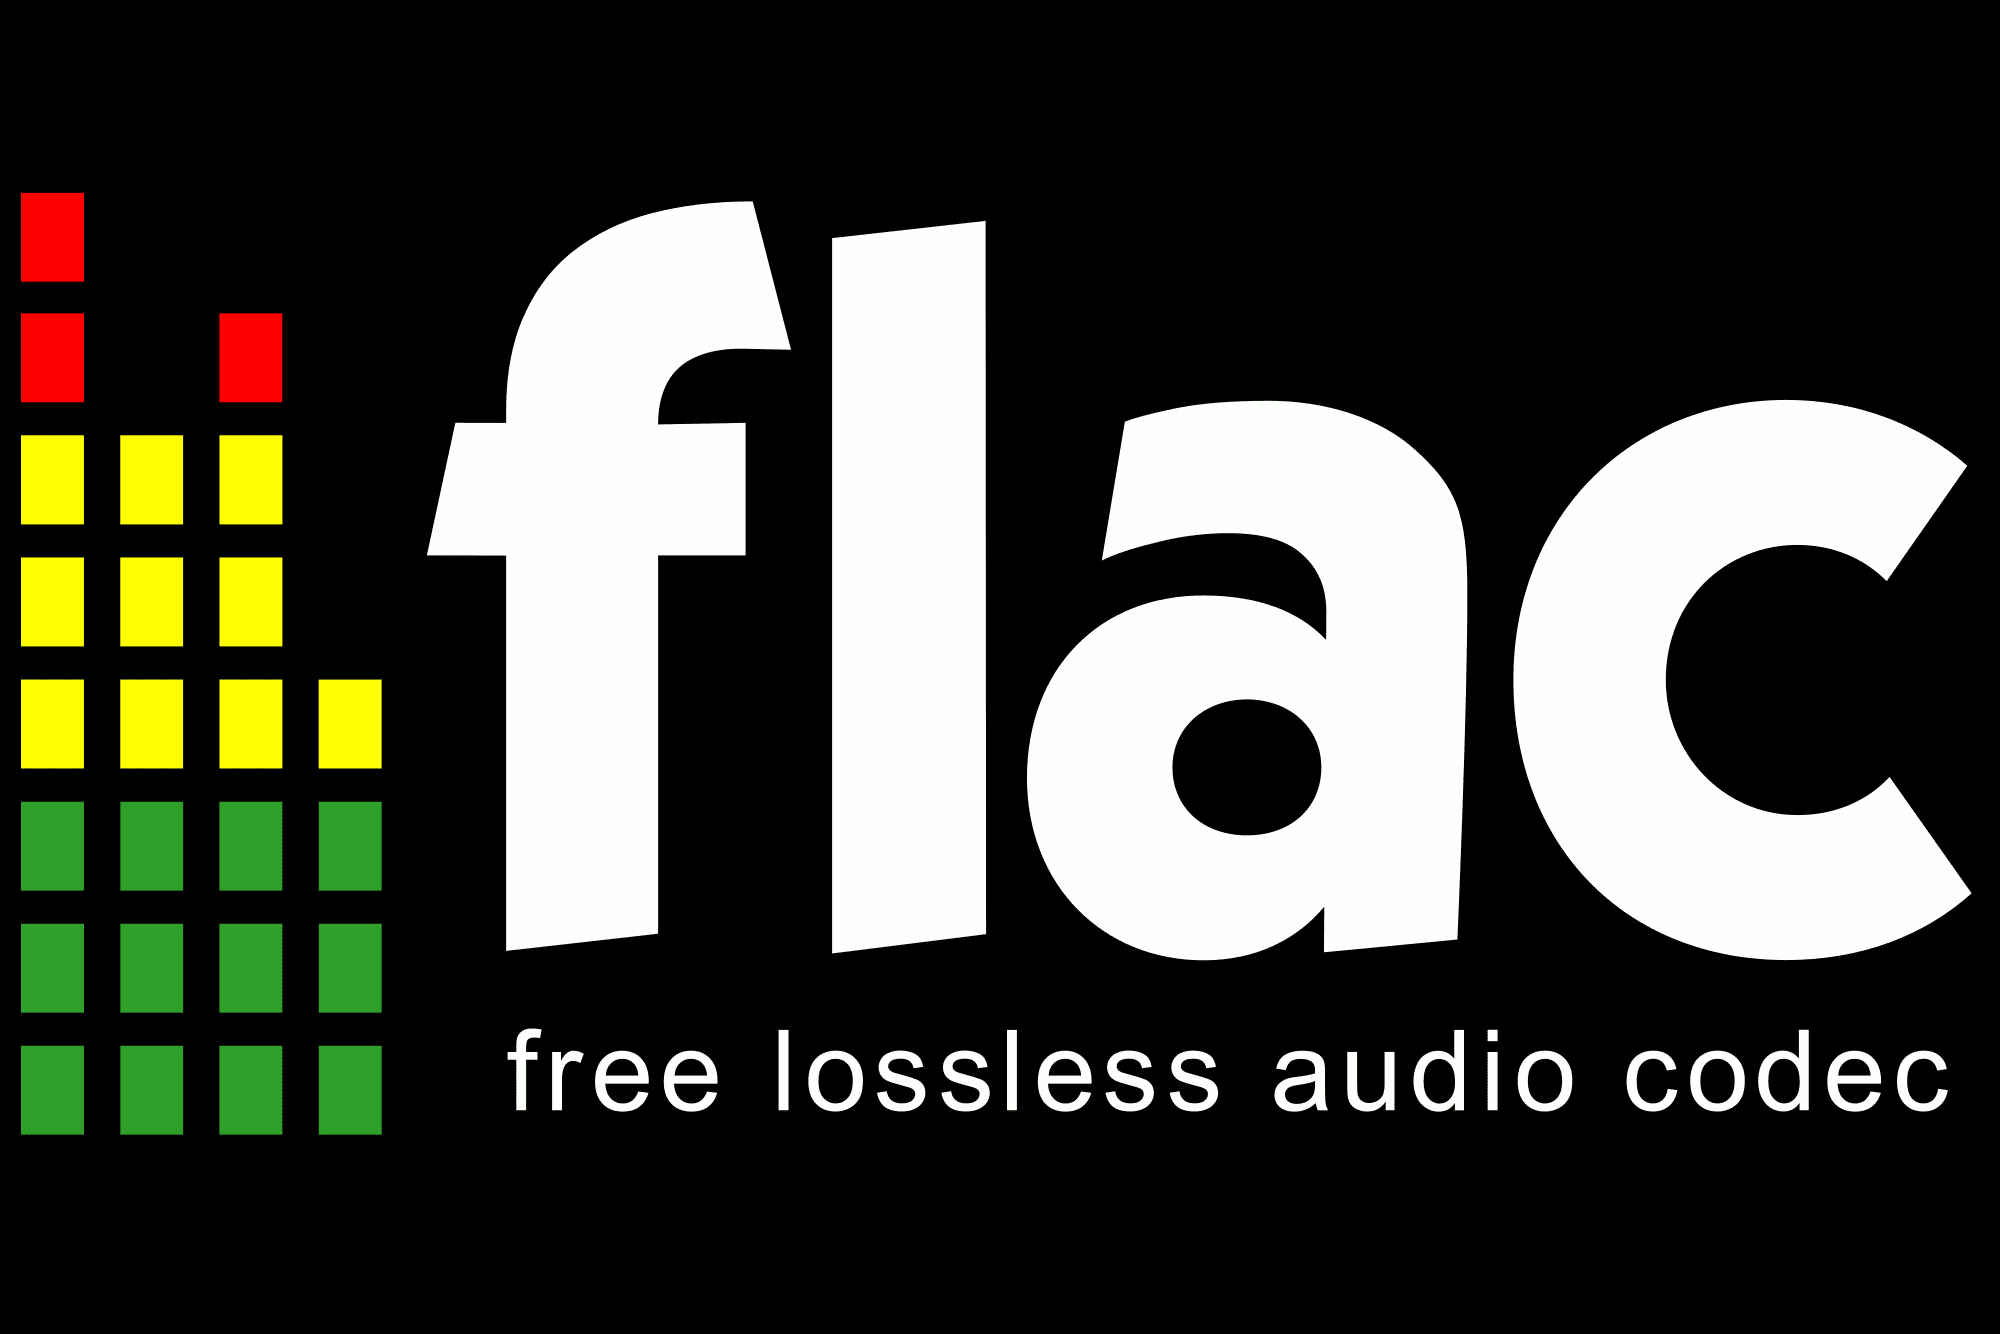 Logotipo da Flac